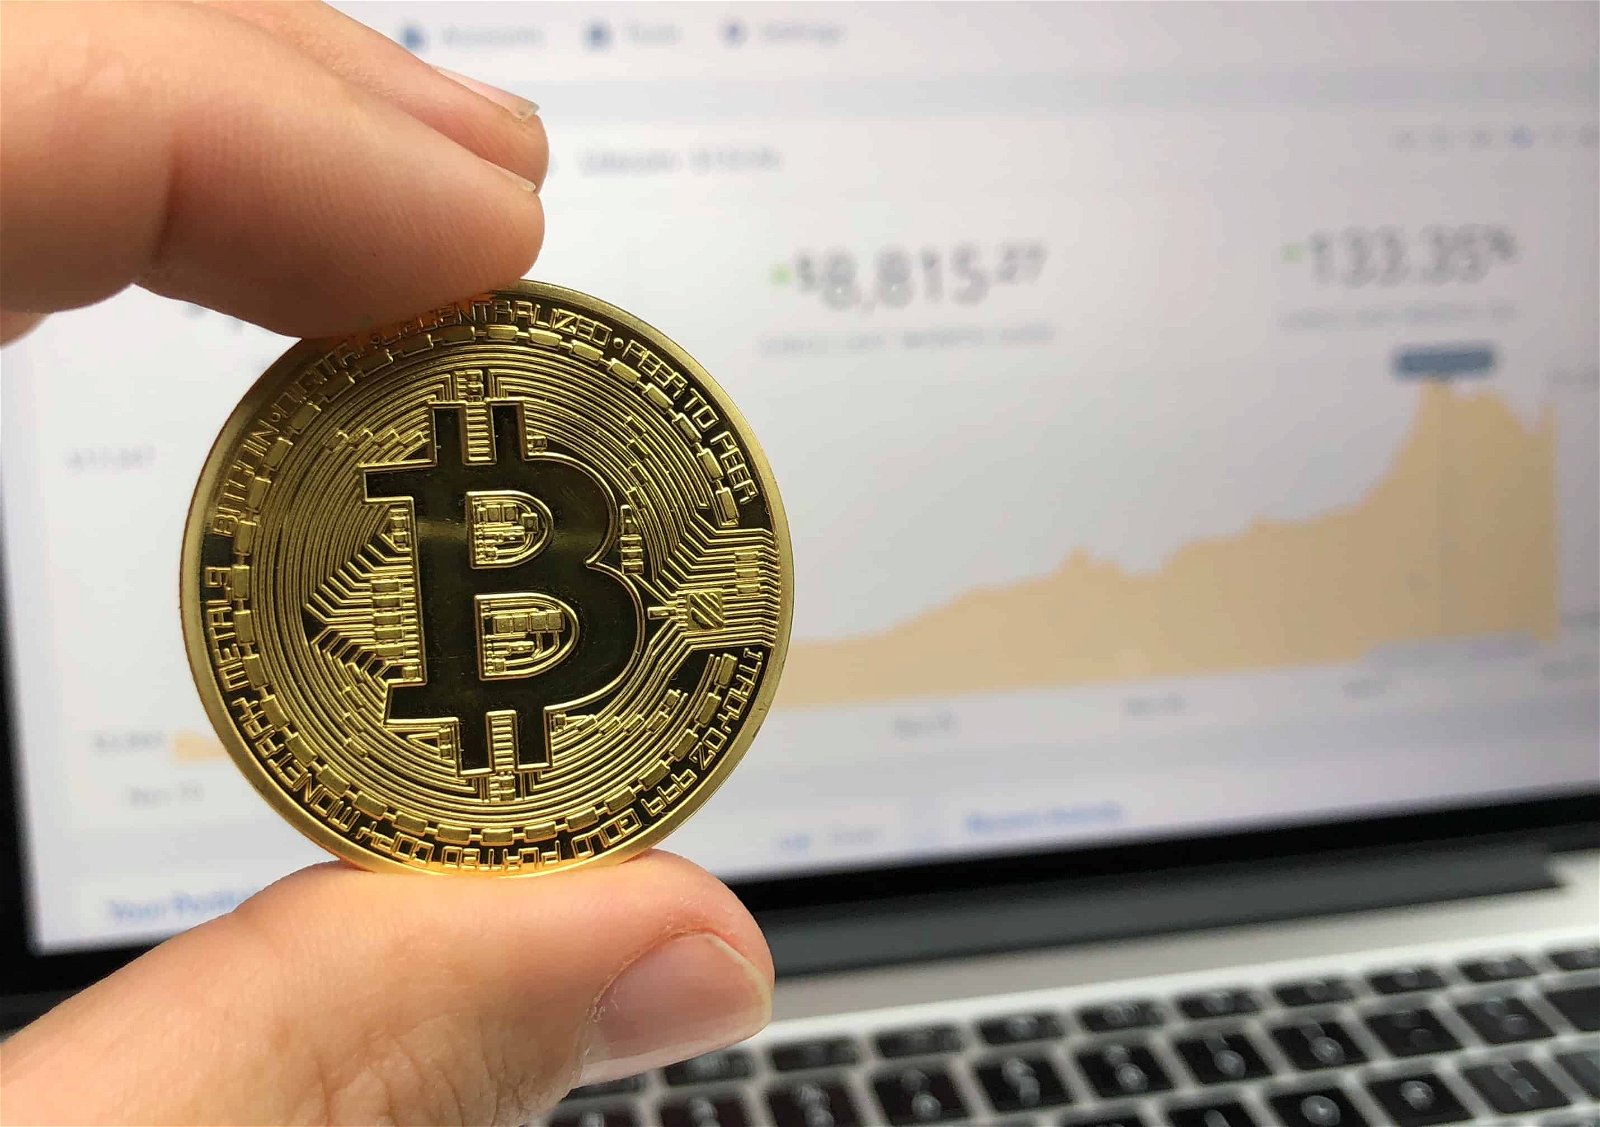 Een hand houdt een muntstuk met een 'B', verwijzend naar Bitcoin, tussen wijsvinger en duim met op de achtergrond het scherm van een pc waarop beurskoersen zijn afgebeeld.